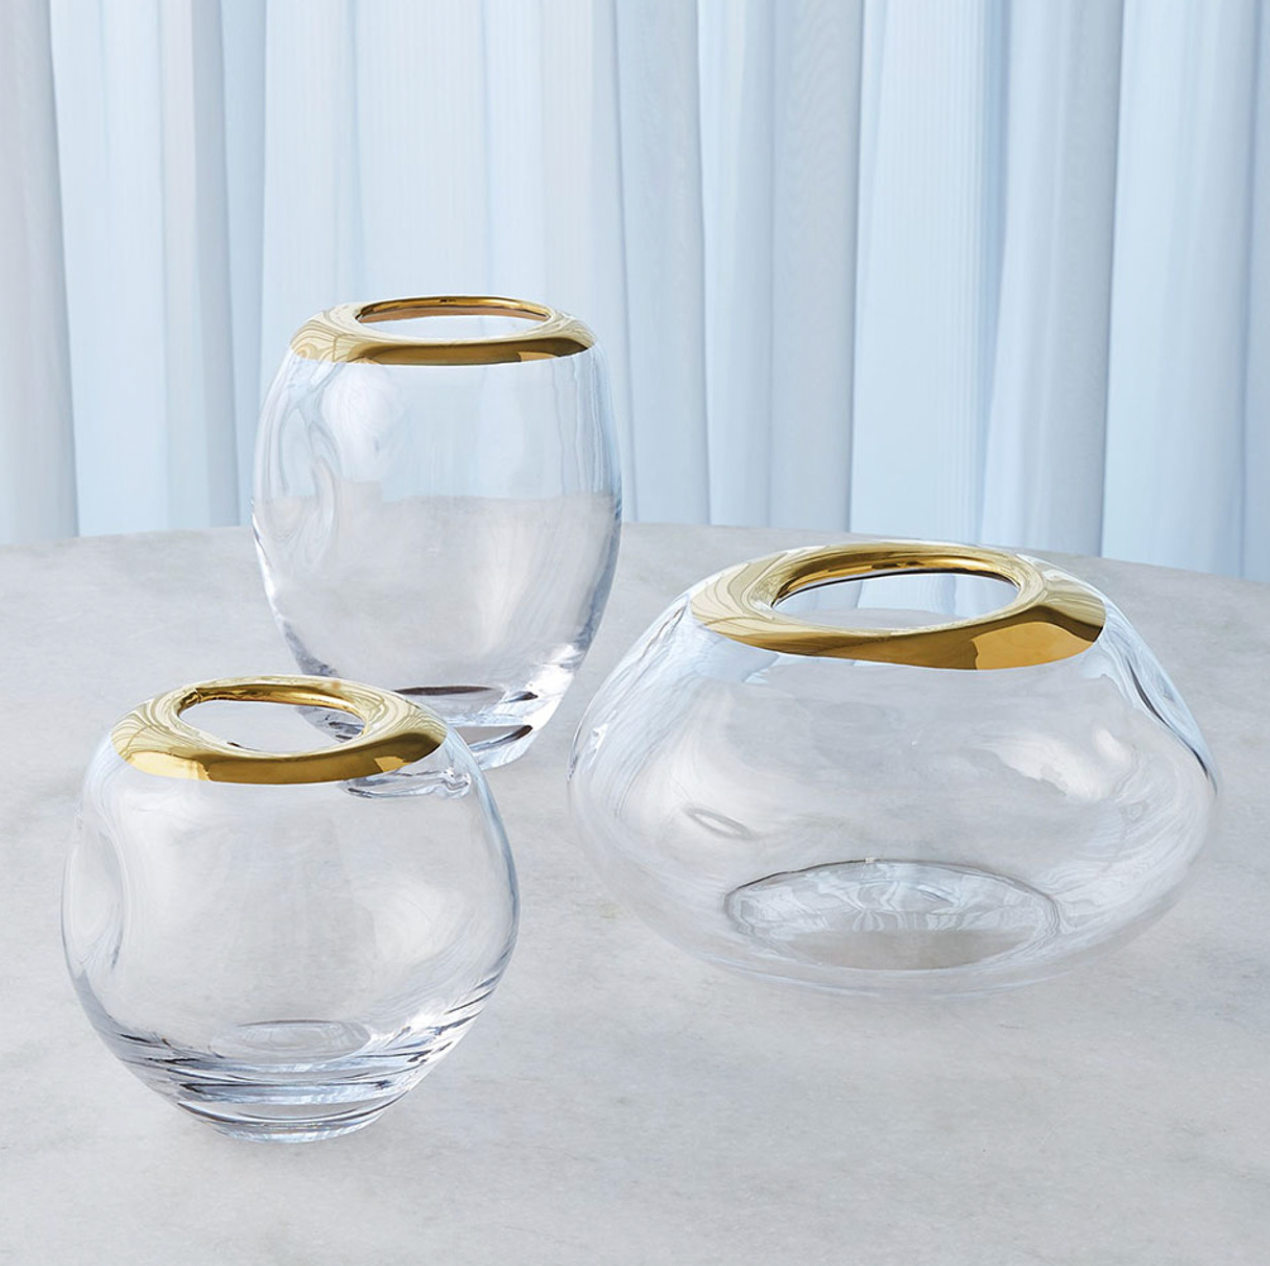 Organic Formed Vase Gold Rim Large